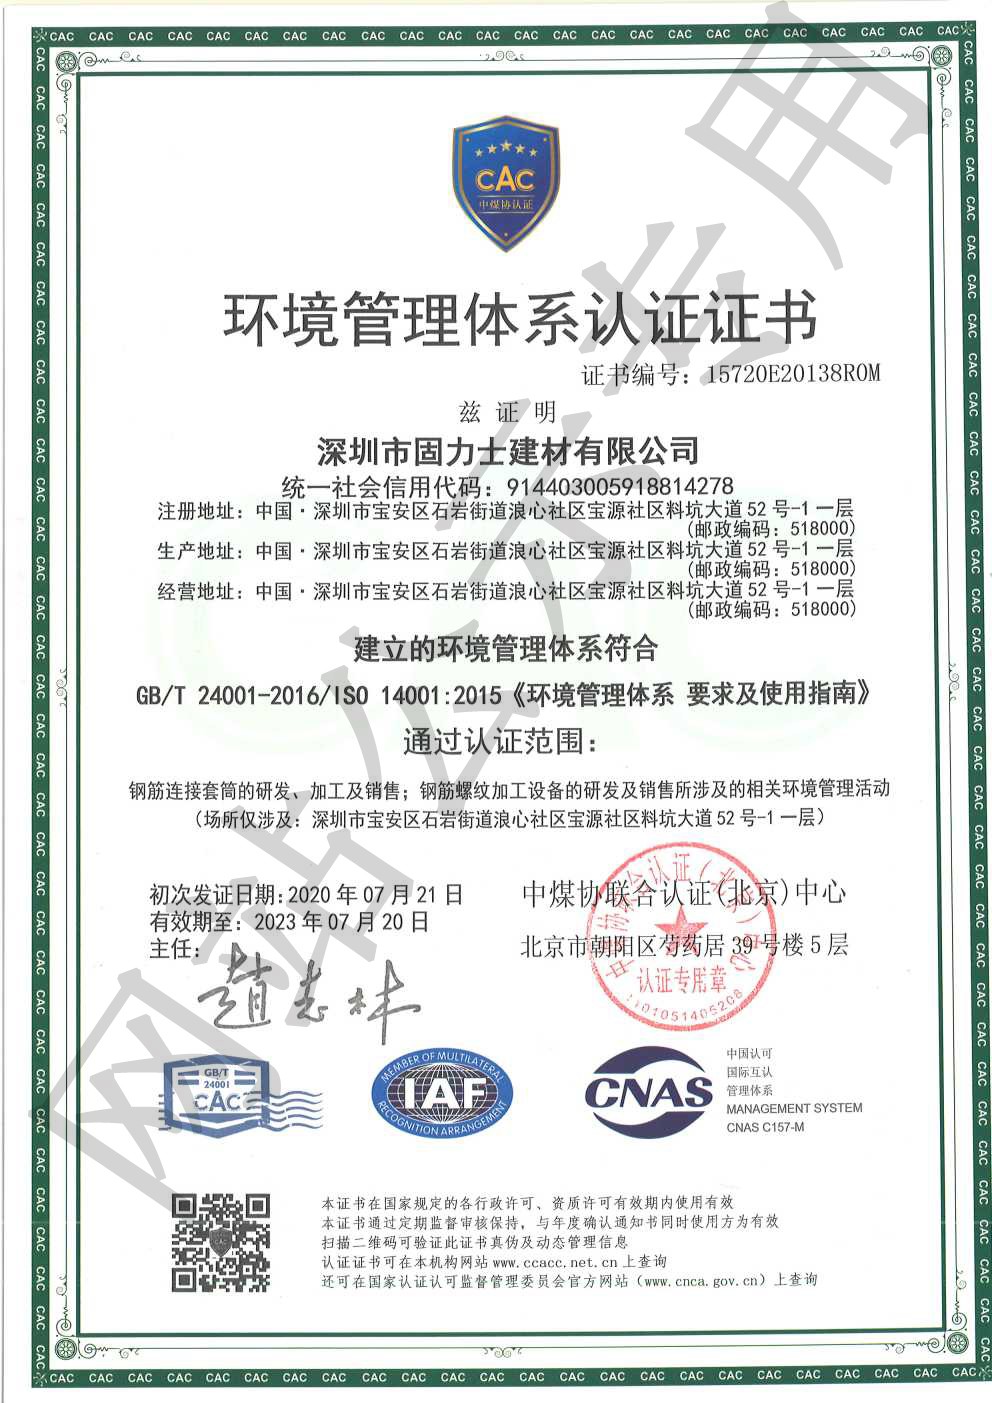 古蔺ISO14001证书